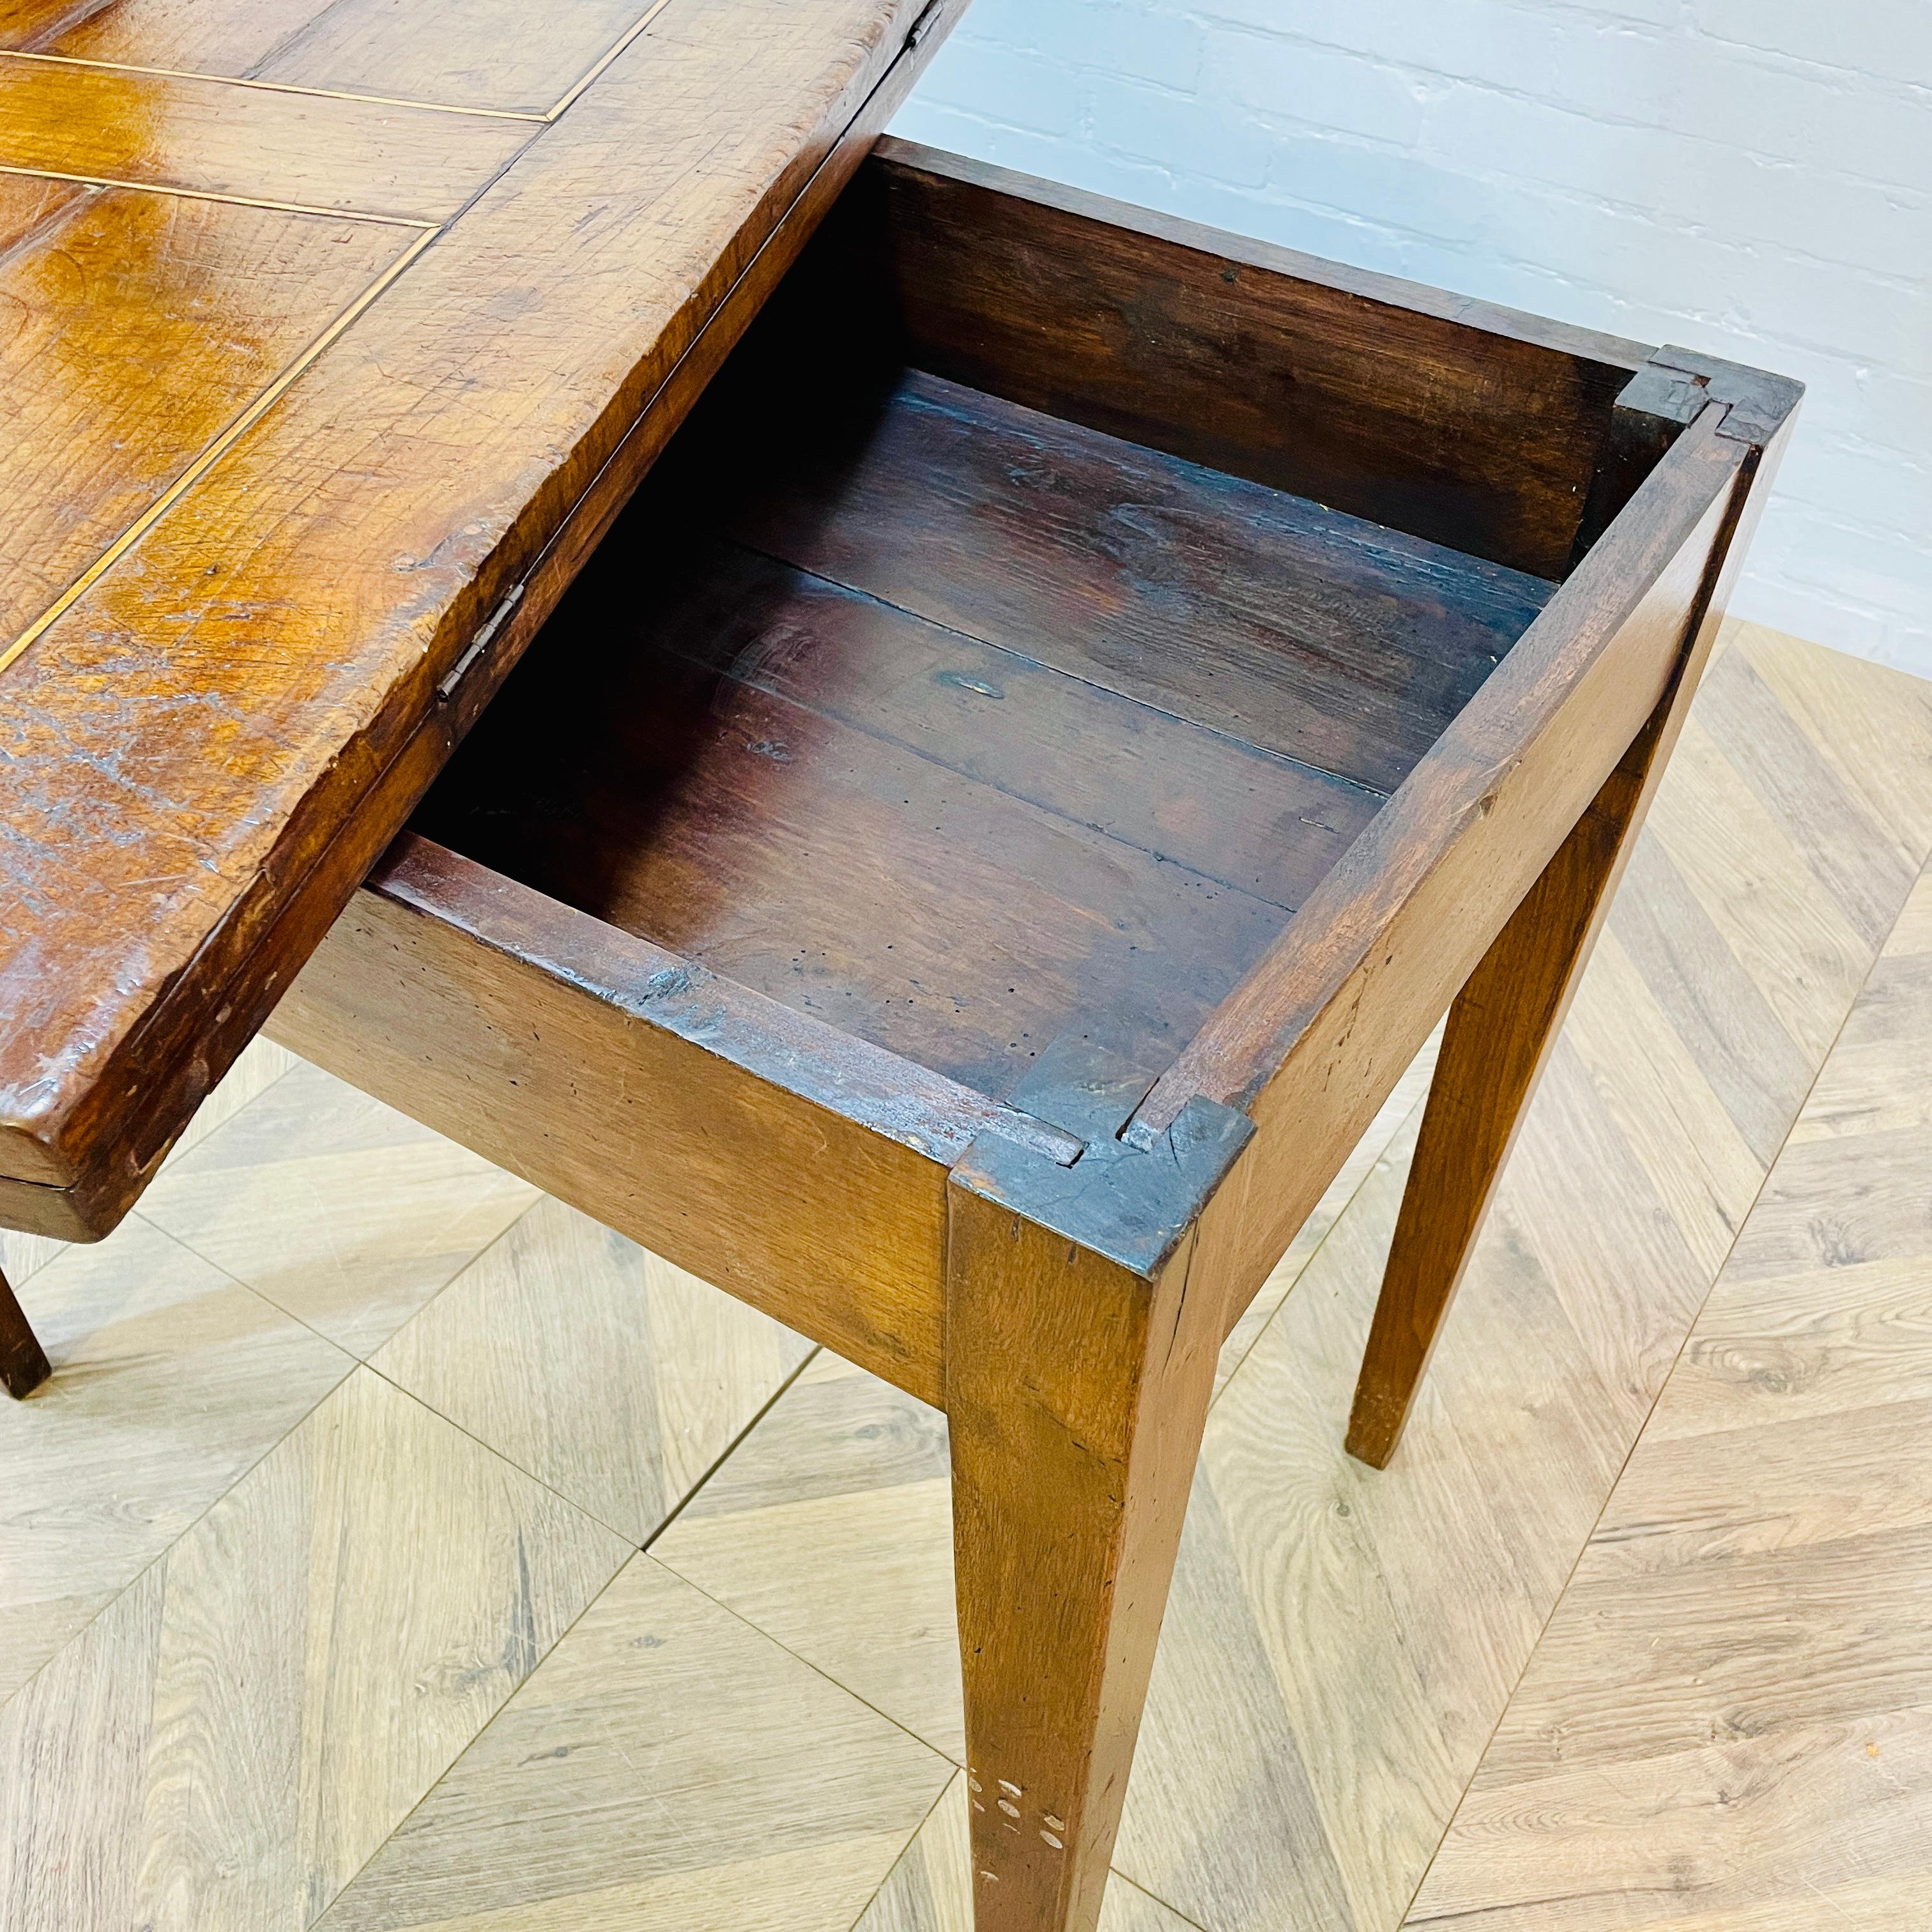 Eine schöne englische antike Foldout Tea Table, georgianischen Periode ca. 1790s.

Der aus Mahagoni gefertigte und strukturell sehr robuste Tisch verfügt über zusätzlichen Stauraum unter dem Tisch.

Der Tisch hat eine warme Patina, zeigt aber